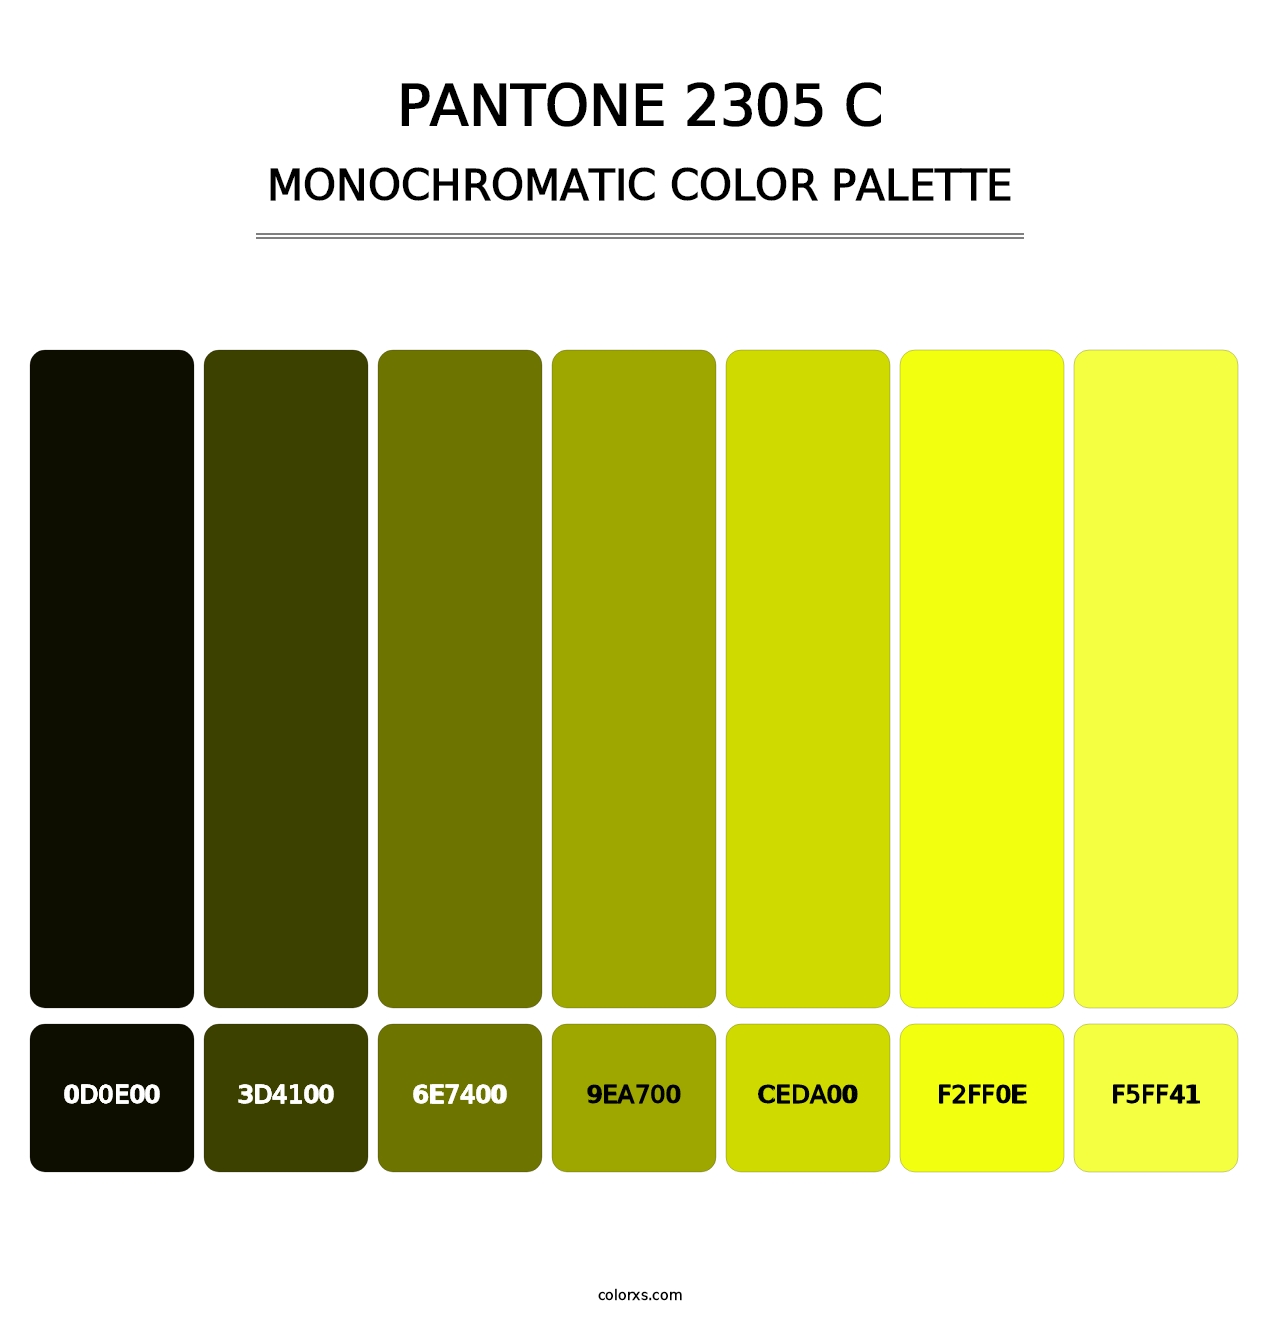 PANTONE 2305 C - Monochromatic Color Palette